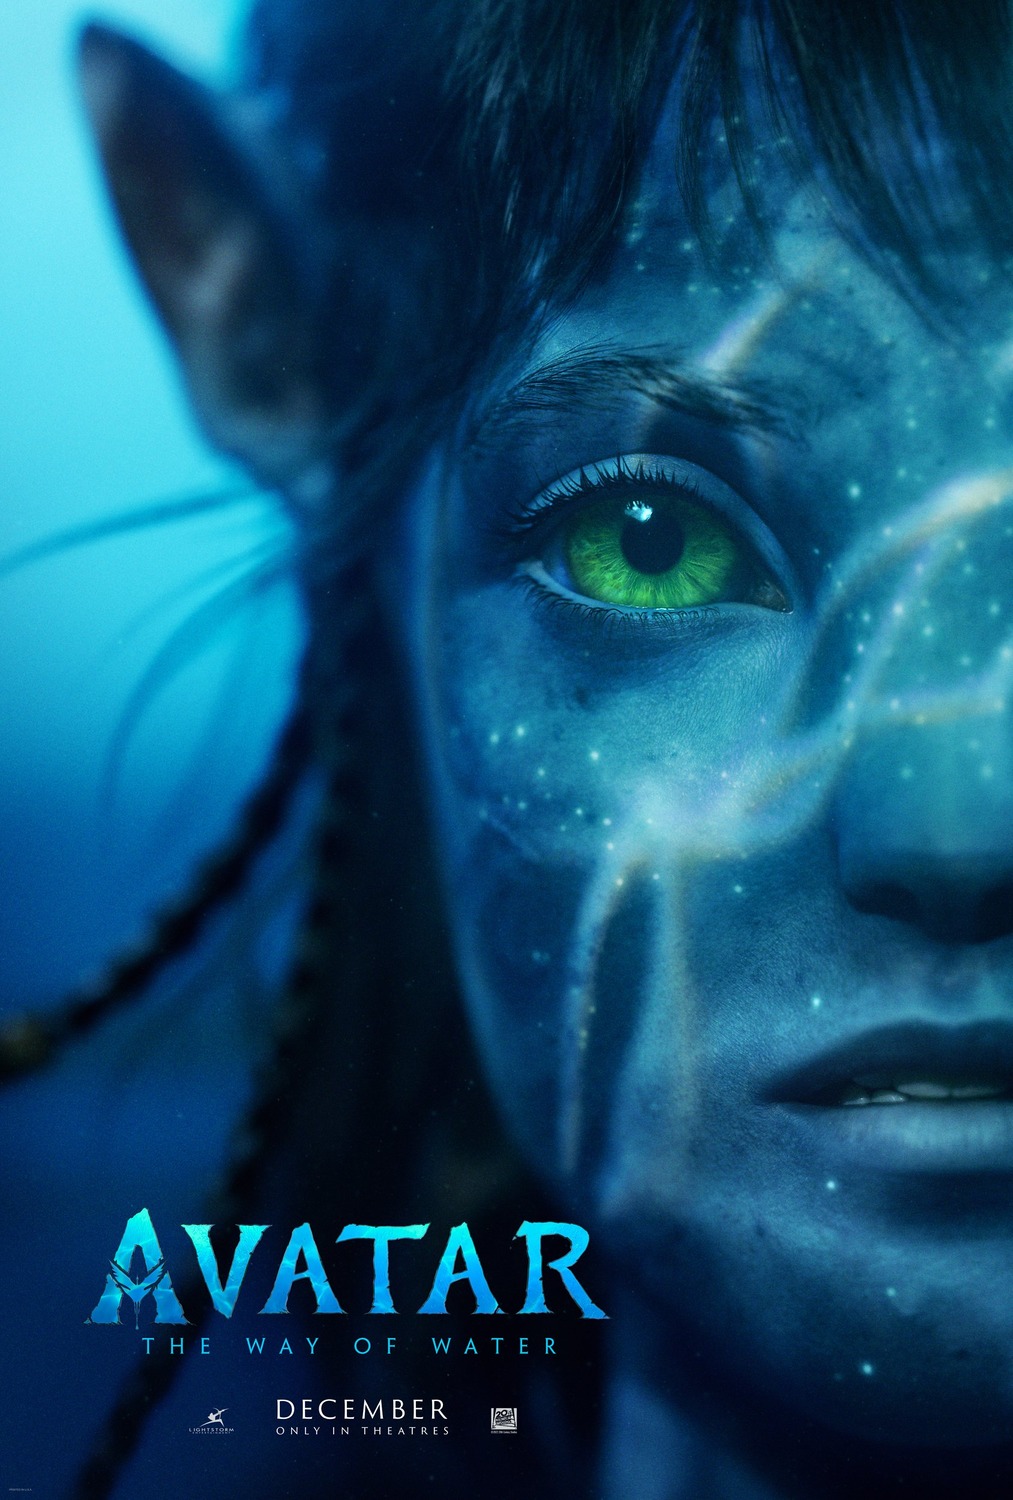 Robert Wojtuń (@WojtunRobert) / Twitter - Liên quan đến Avatar: Theo dõi tài khoản Twitter của Robert Wojtun để cập nhật những tin tức mới nhất về bộ phim Avatar. Từ những sneak-peek về cảnh quay đến thông tin về diễn viên, Robert luôn cập nhật những thông tin hot nhất về bộ phim này. Đừng bỏ lỡ cơ hội đón xem Avatar trong năm 2024!